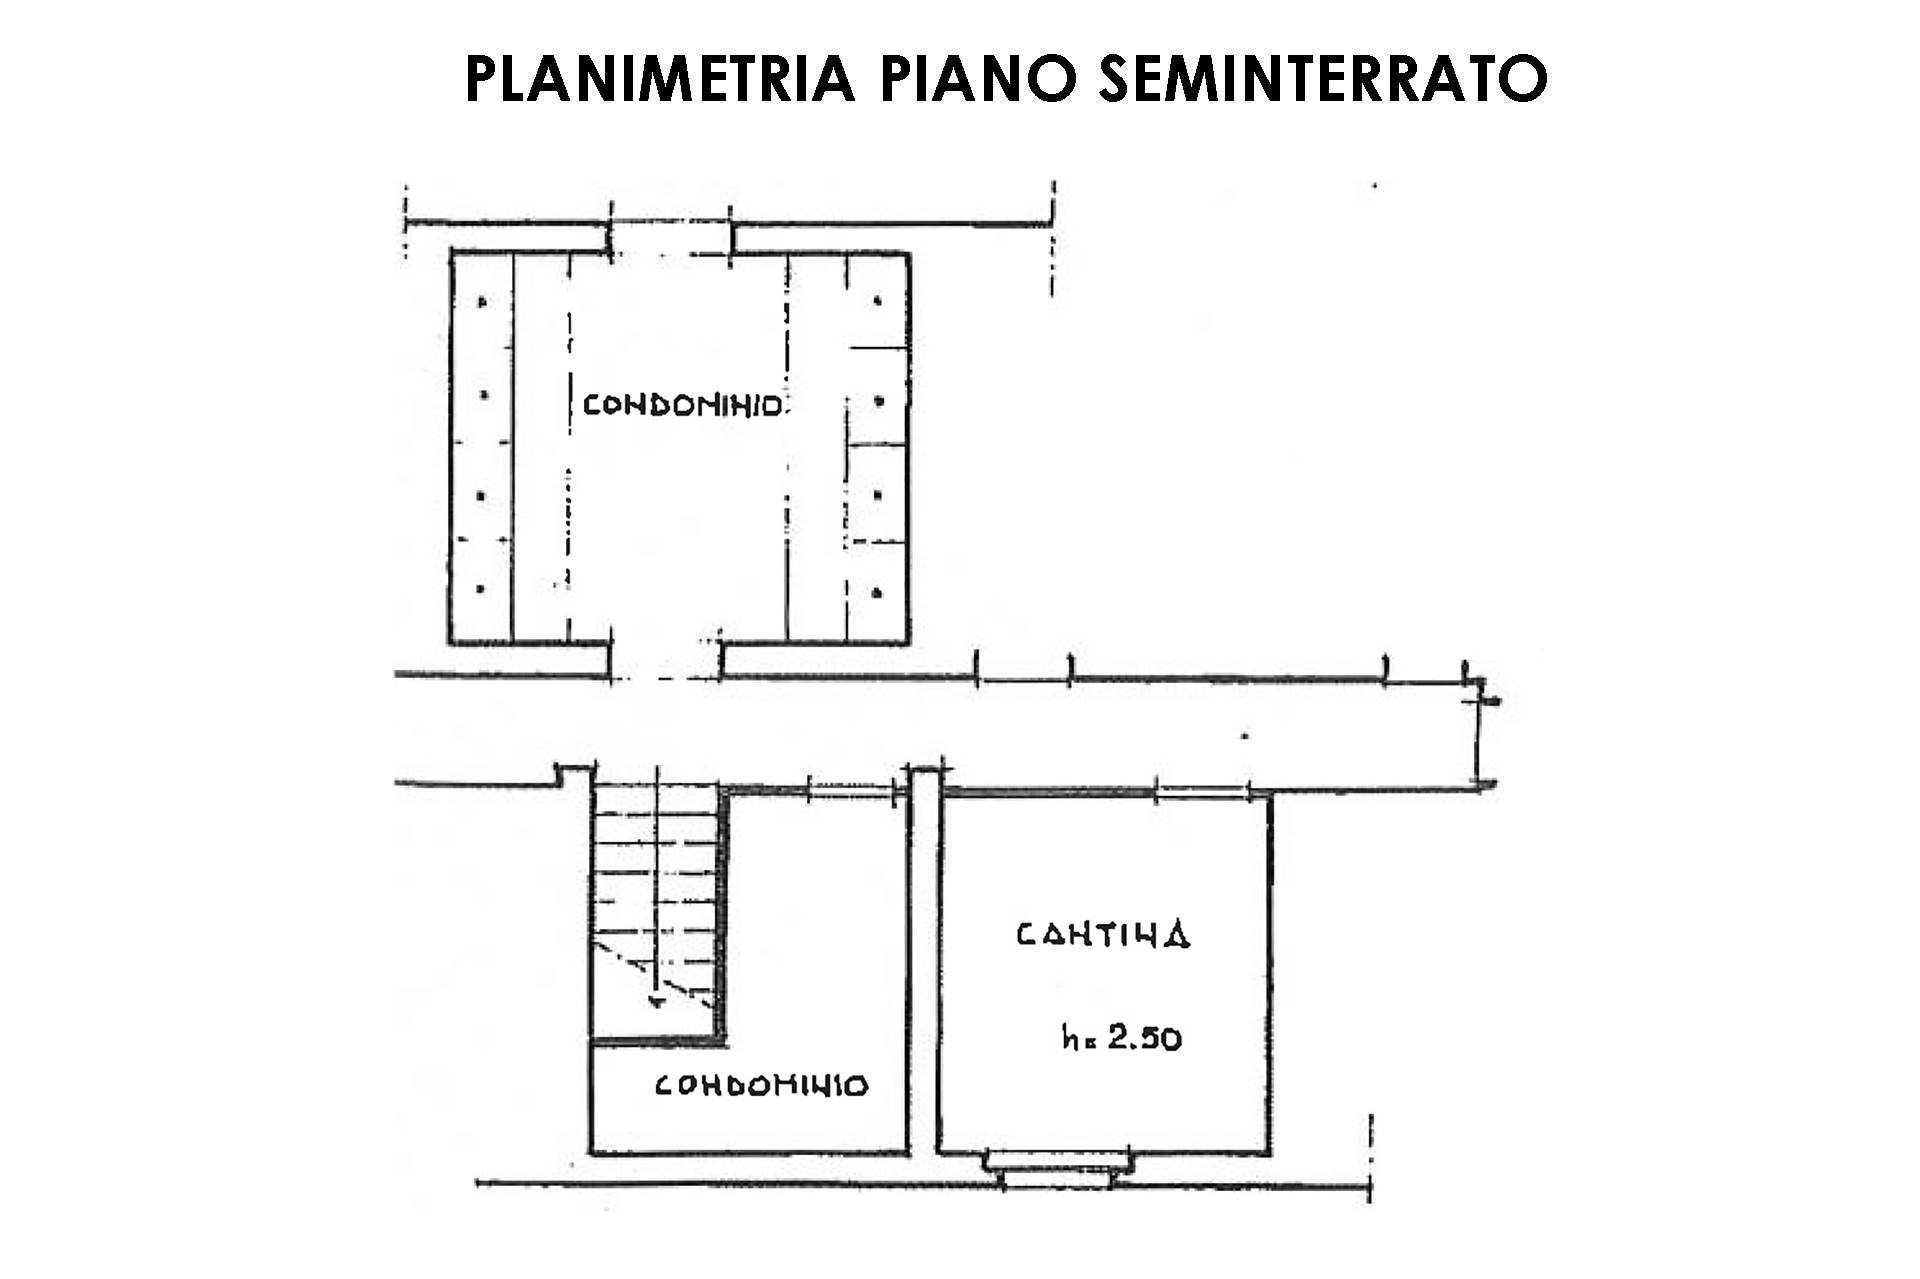 Planimetria S1